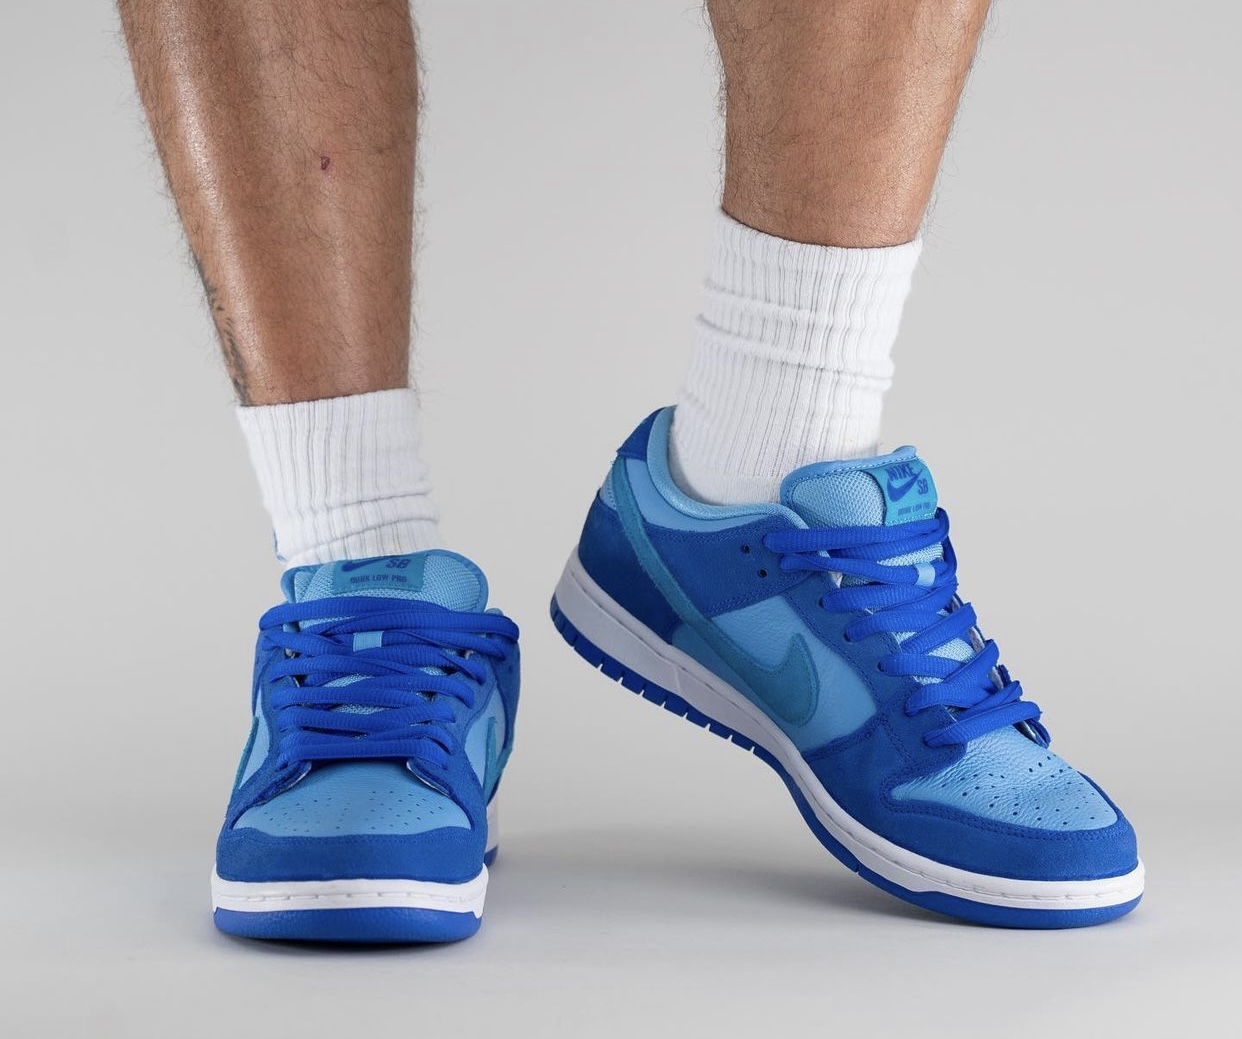 Nike SB Dunk Low Blue Raspberry DM0807 400 Release Date On Feet 4